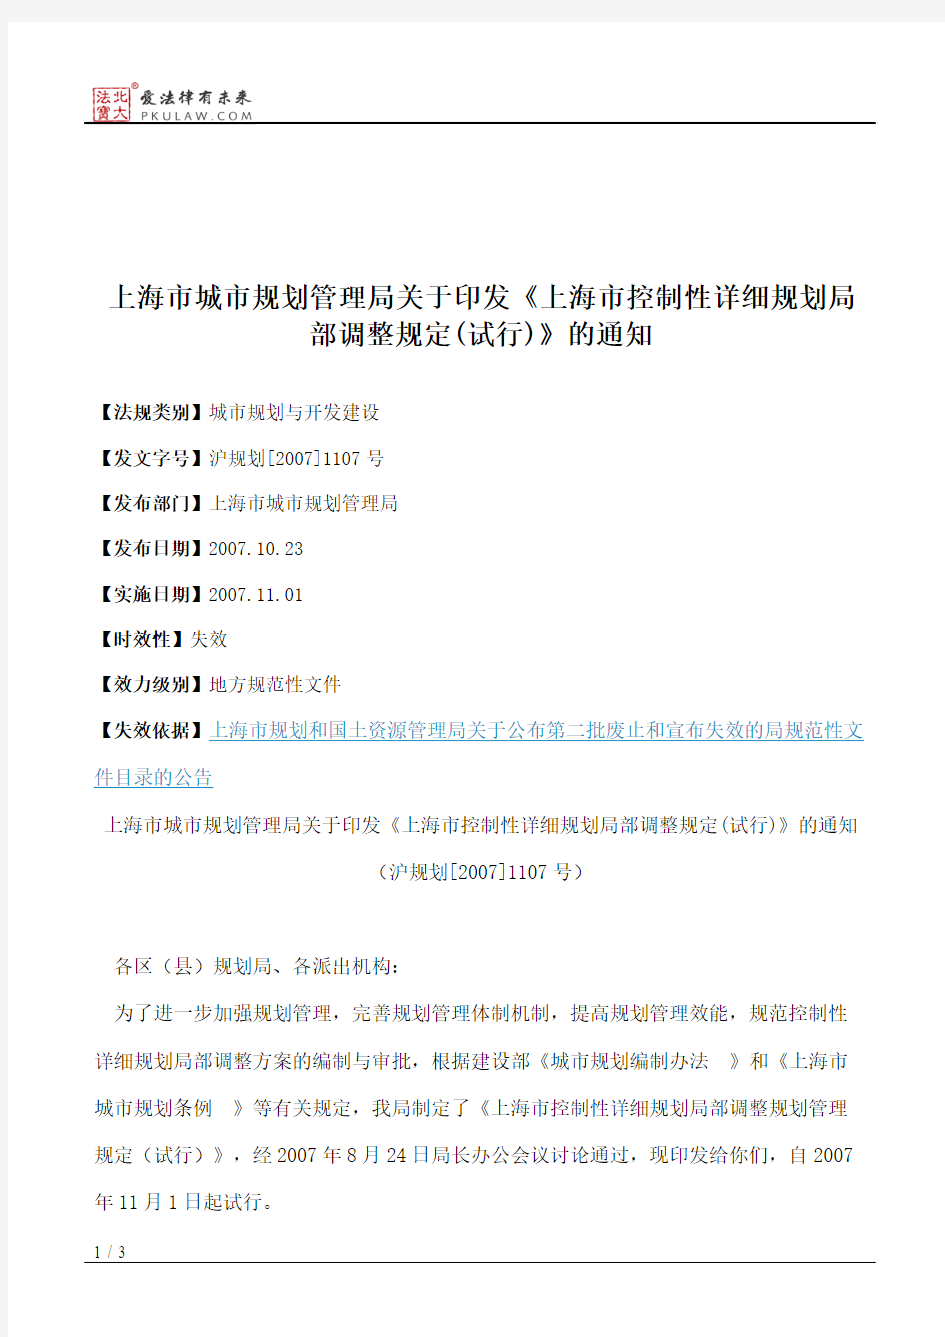 上海市城市规划管理局关于印发《上海市控制性详细规划局部调整规